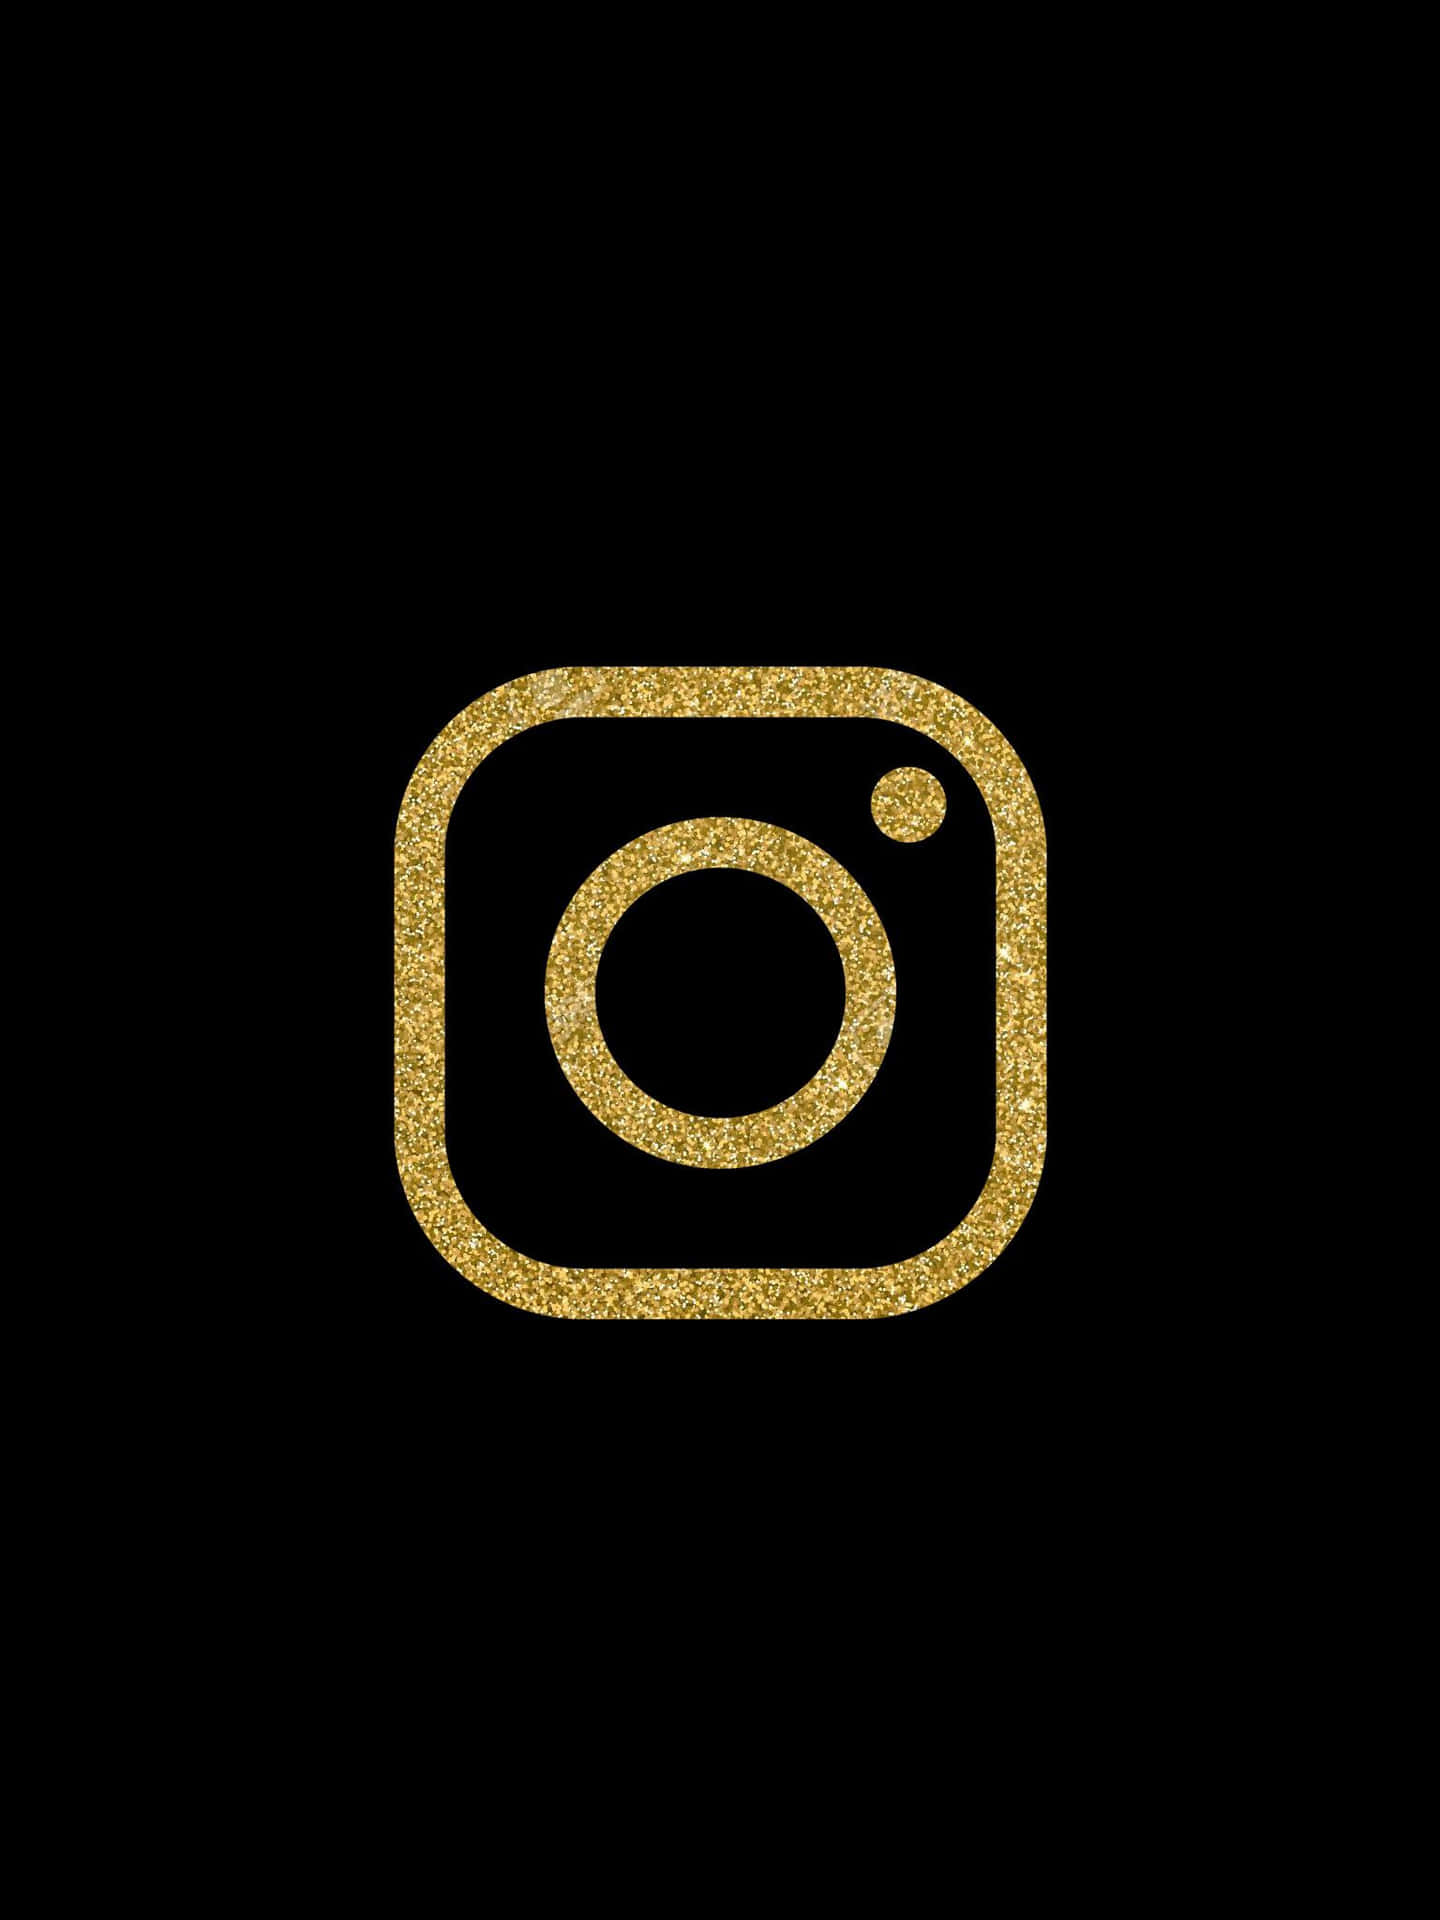 Instagram Logo Gold Black Background